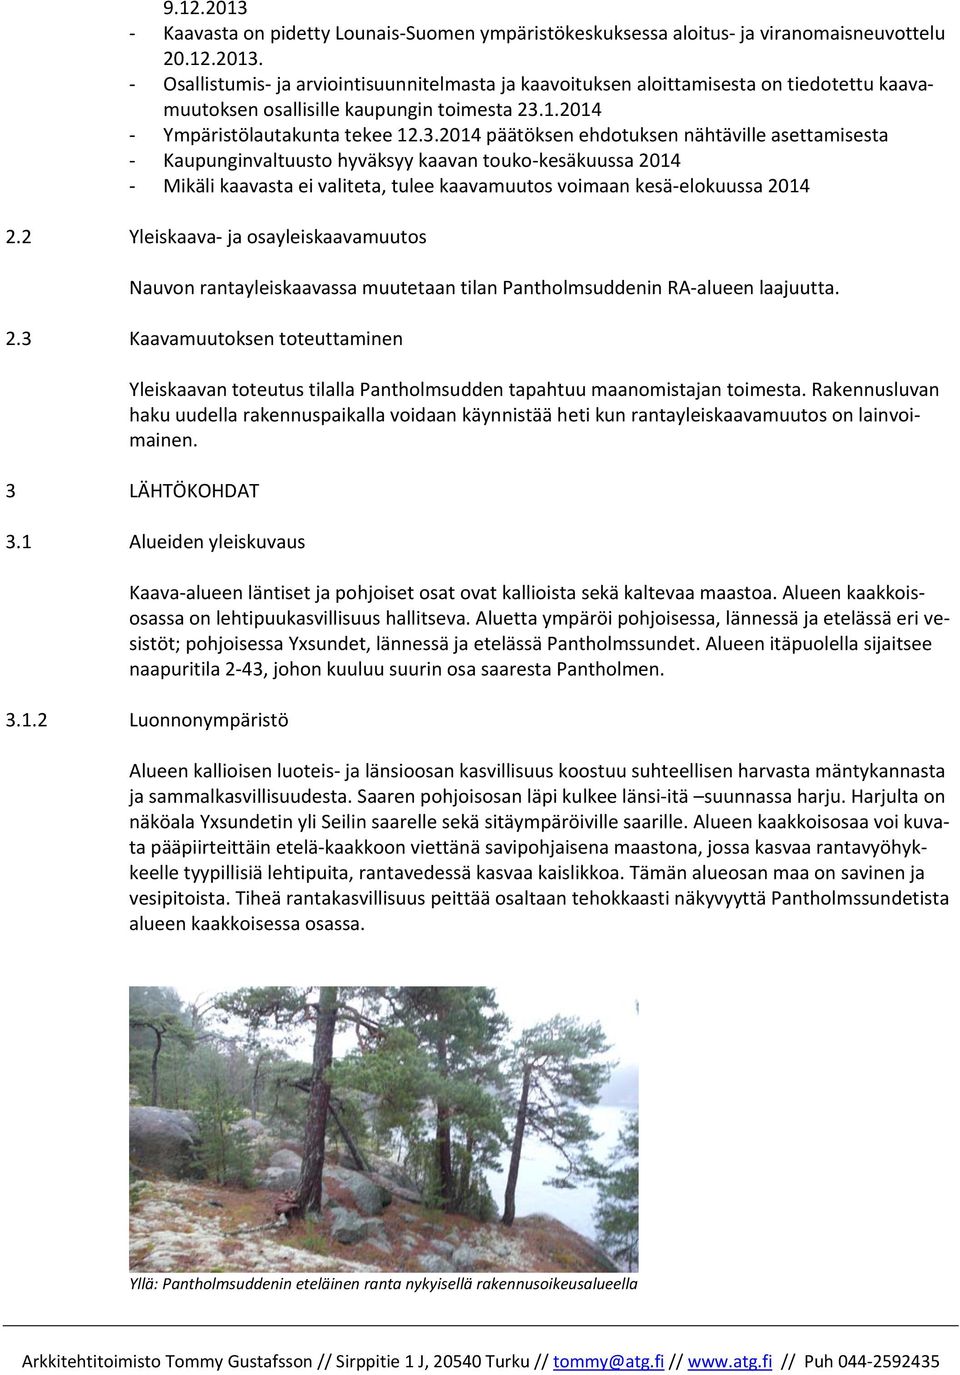 2014 päätöksen ehdotuksen nähtäville asettamisesta Kaupunginvaltuusto hyväksyy kaavan touko kesäkuussa 2014 Mikäli kaavasta ei valiteta, tulee kaavamuutos voimaan kesä elokuussa 2014 2.